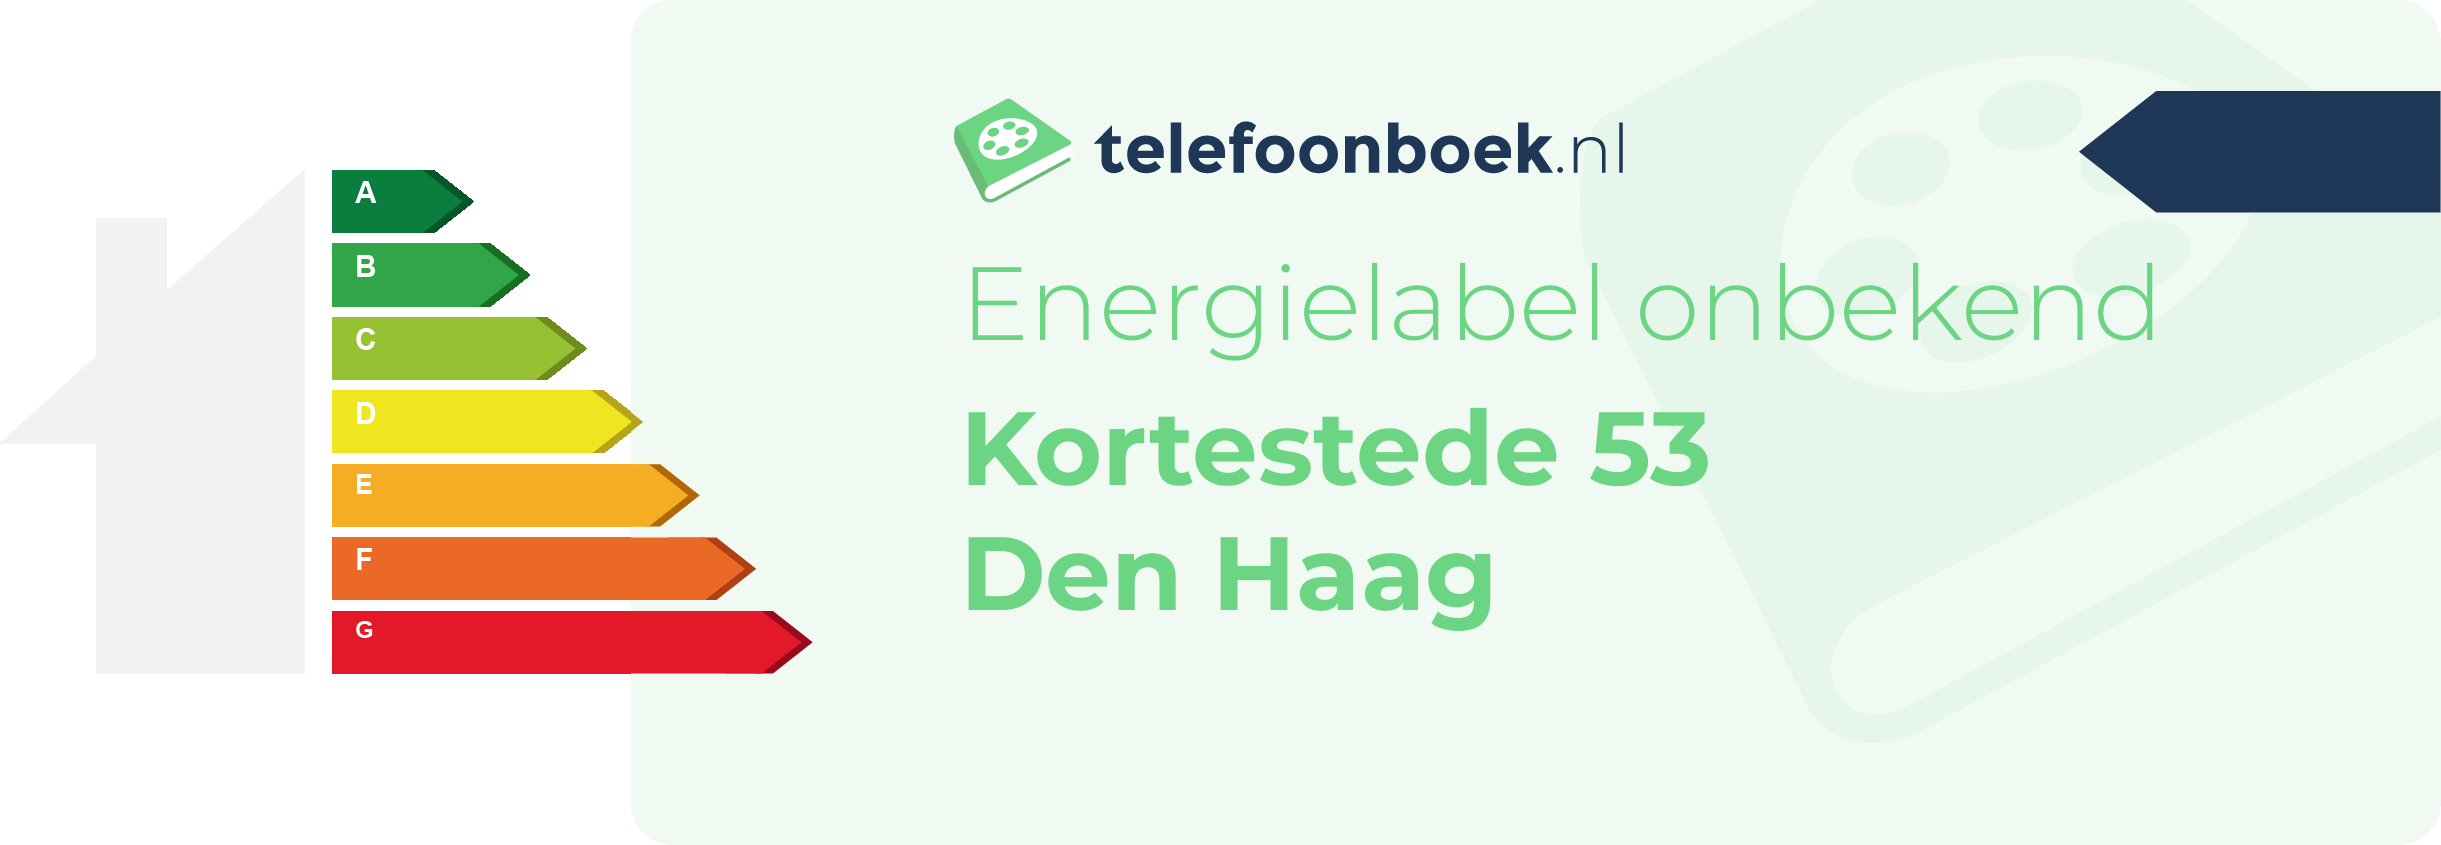 Energielabel Kortestede 53 Den Haag